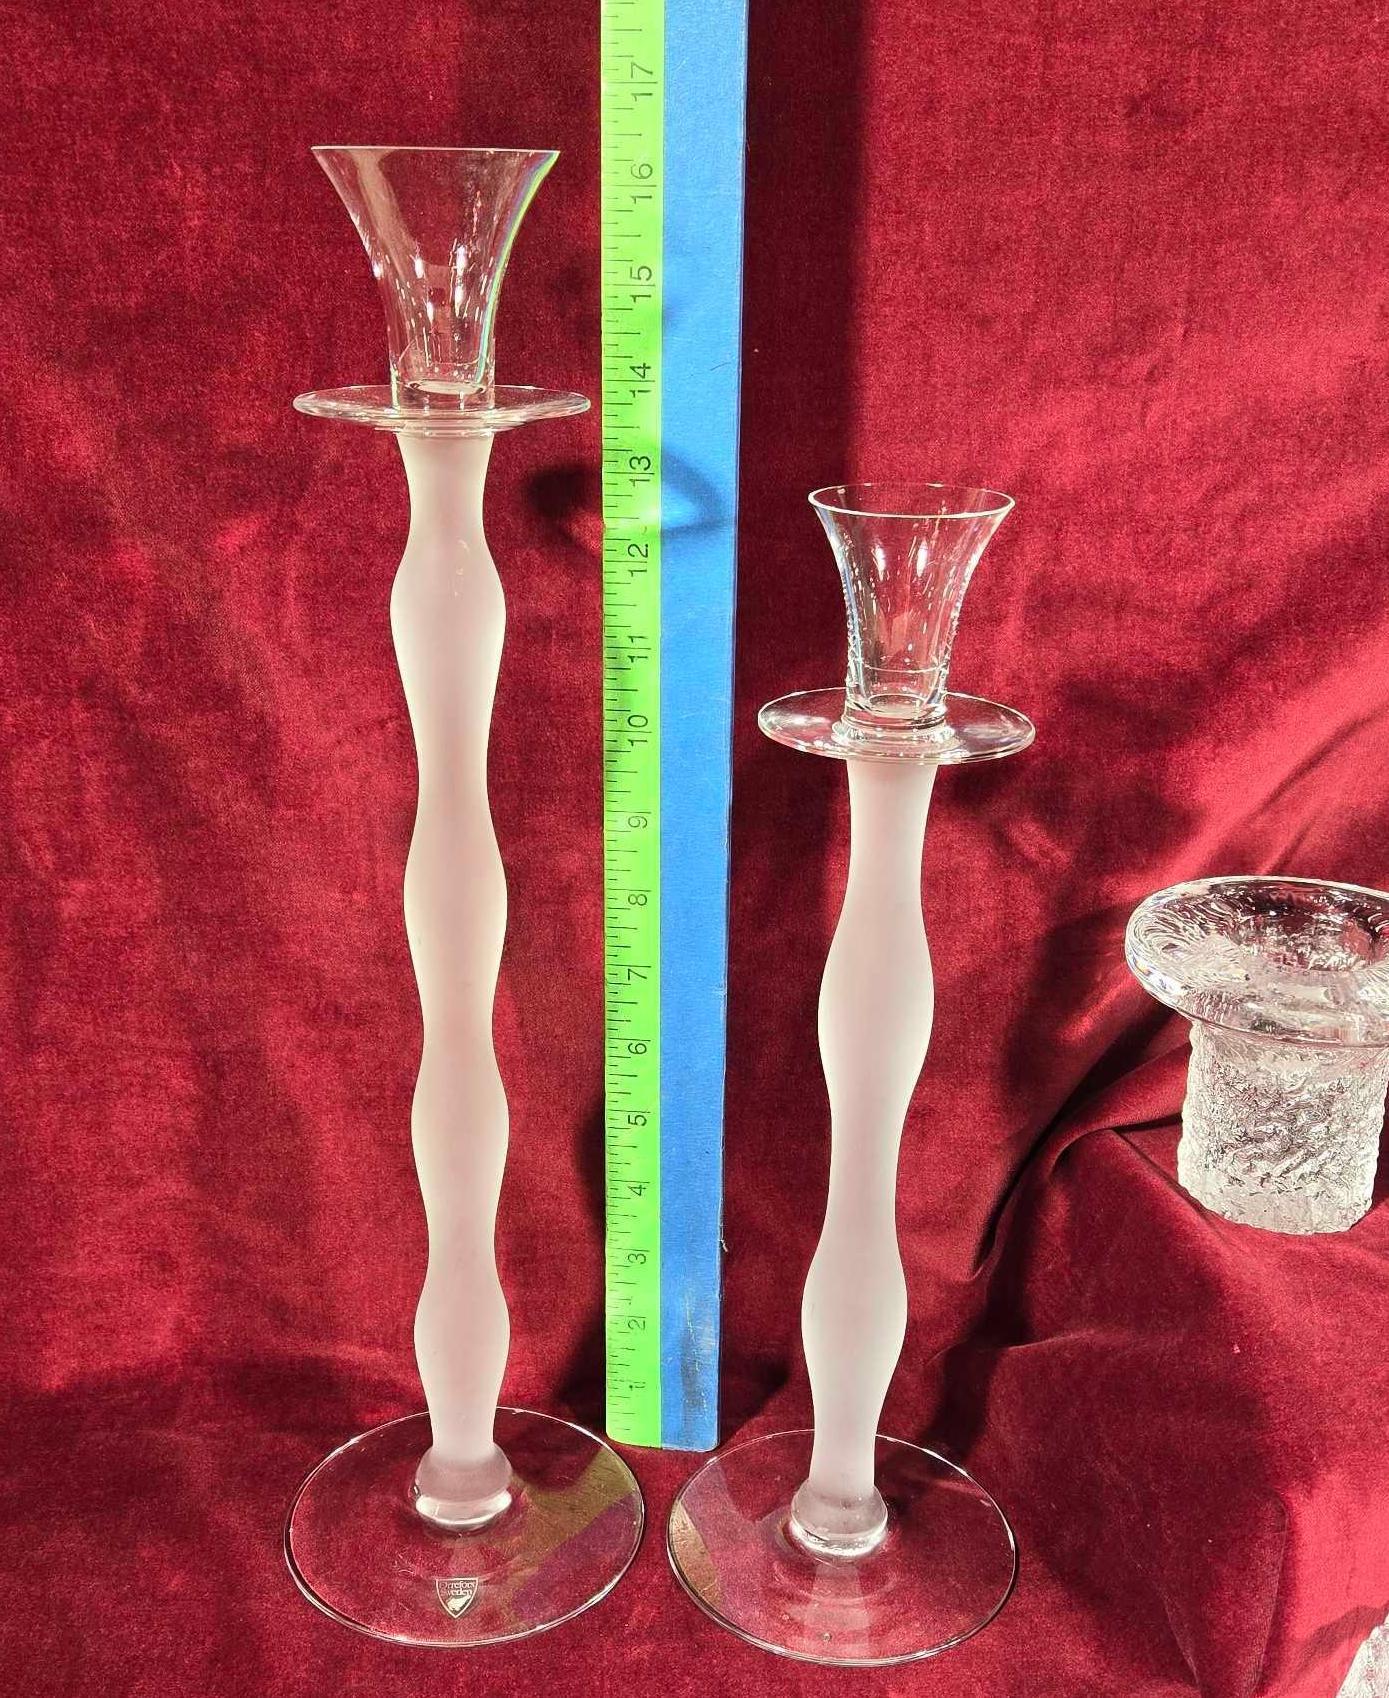 8 Pcs. Scandinavian Clear Art Glass Candle Holders